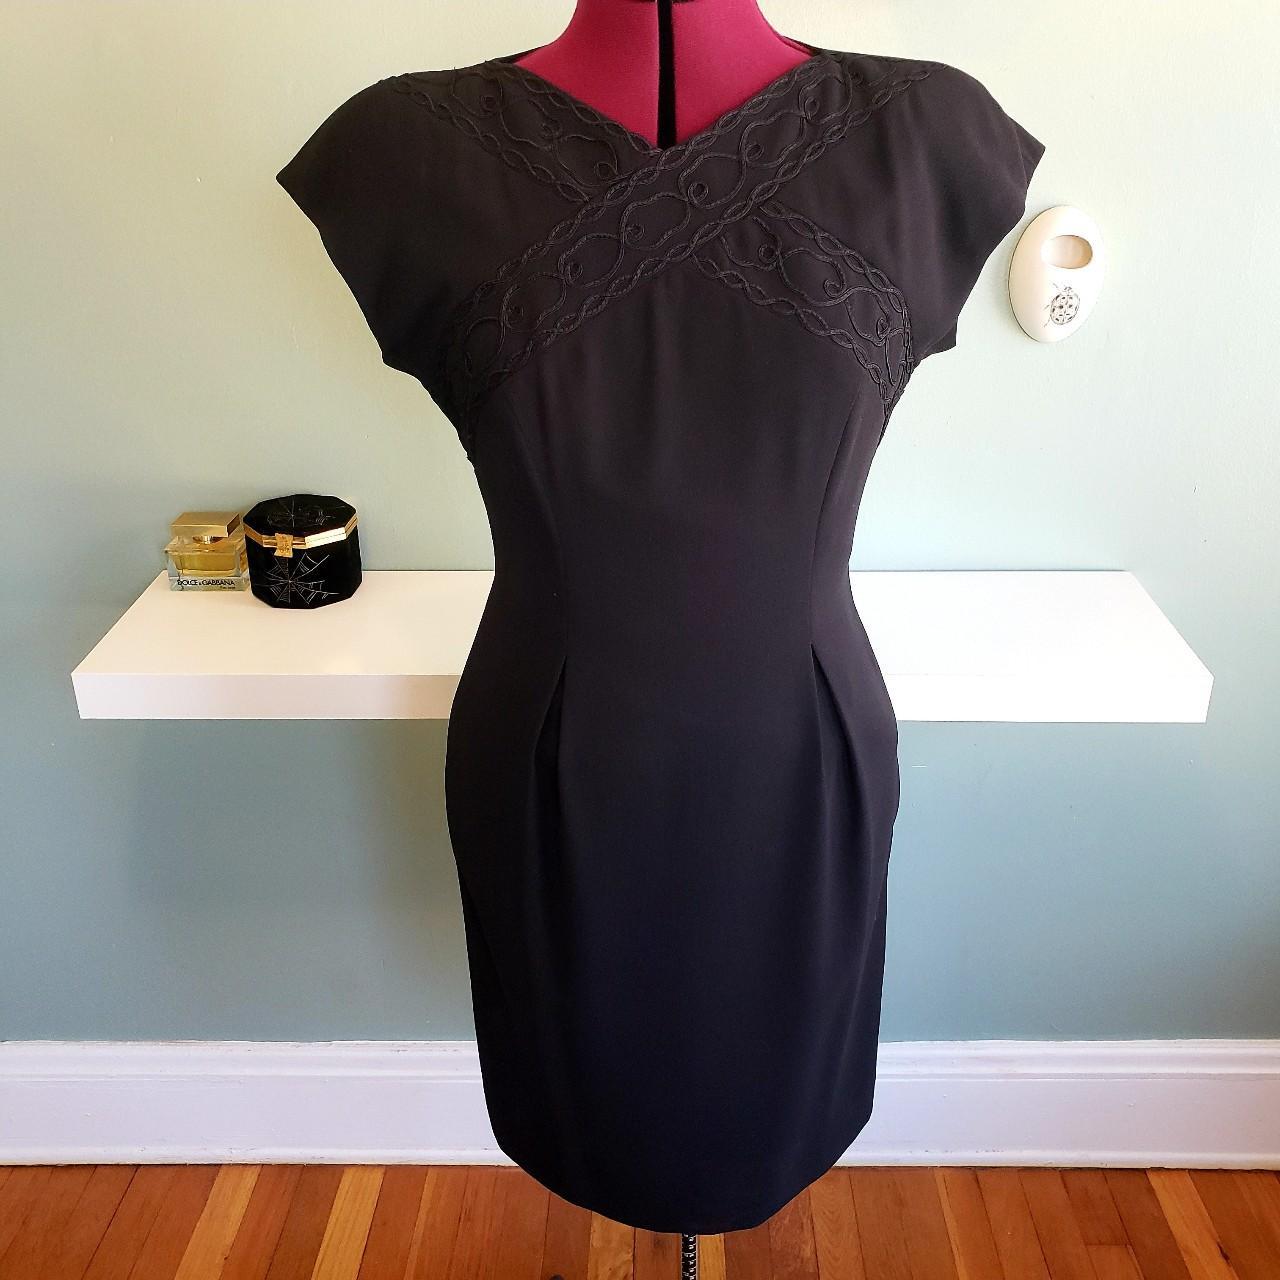 Product Image 2 - 90s Vintage Liz Claiborne Dress

Size